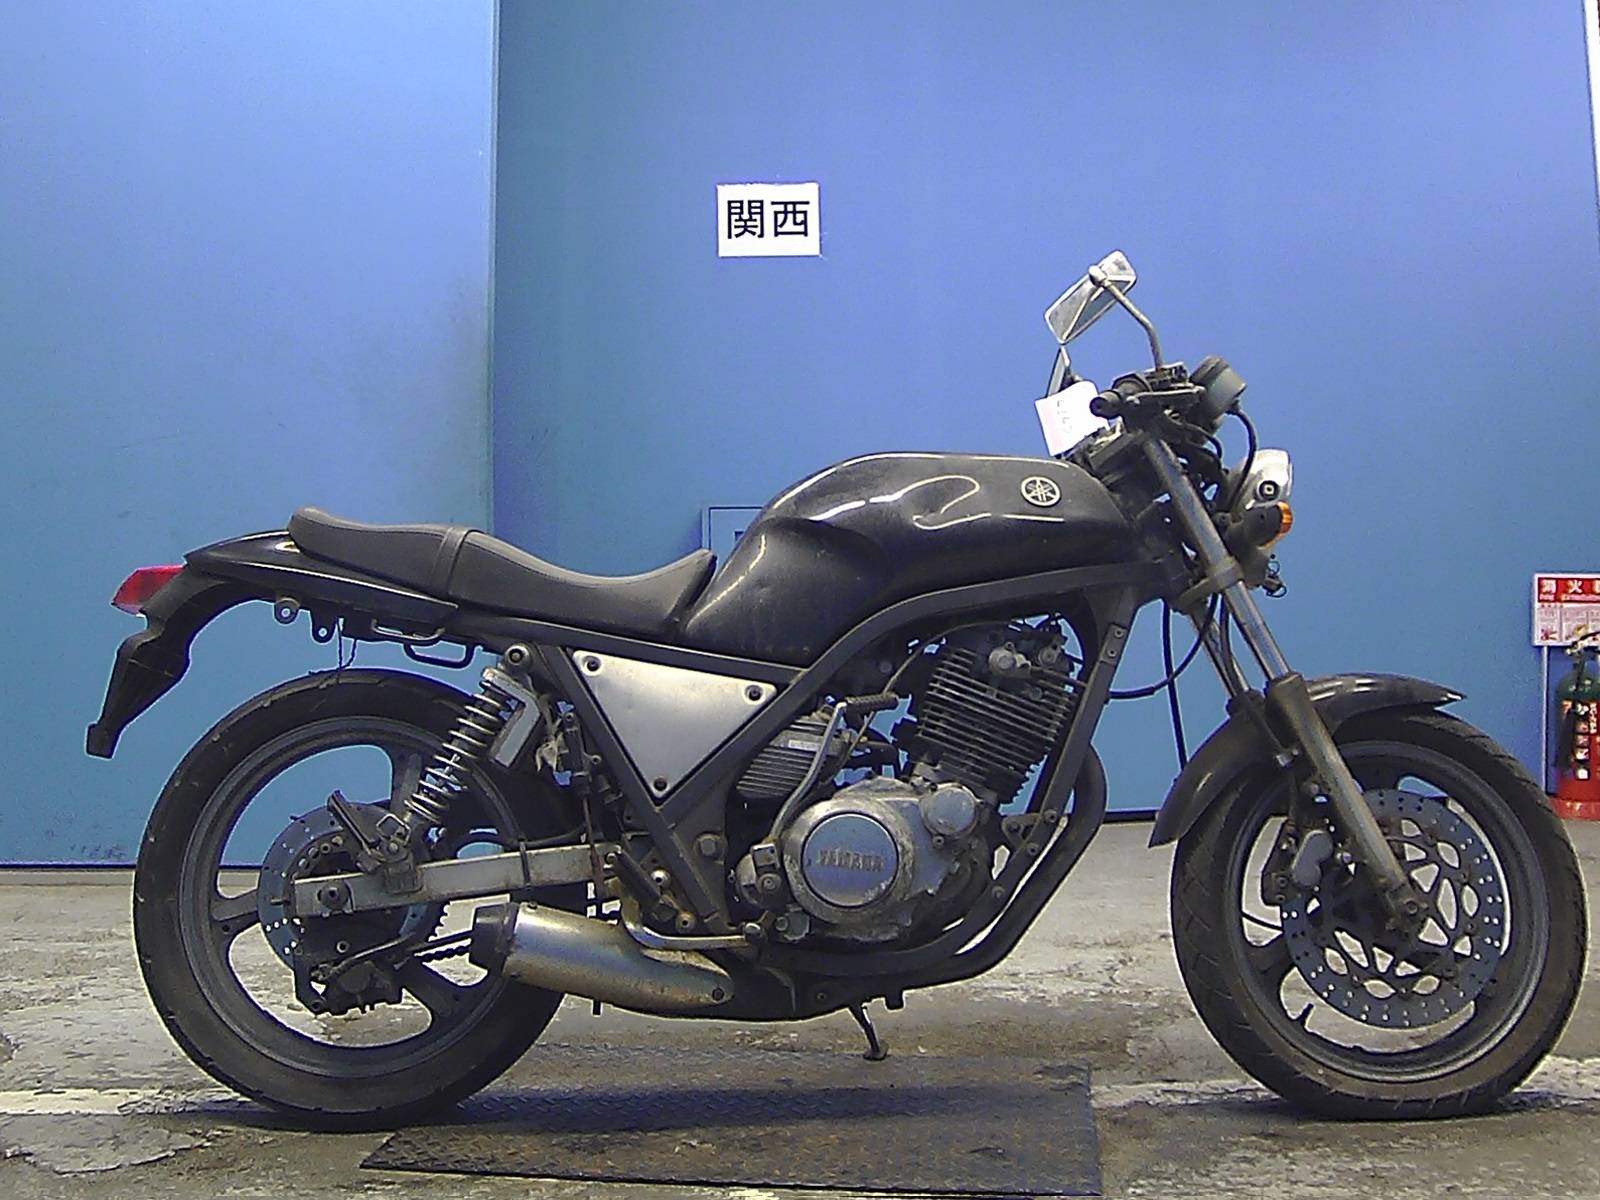 Yamaha srx 400 - простотой и надежный байк